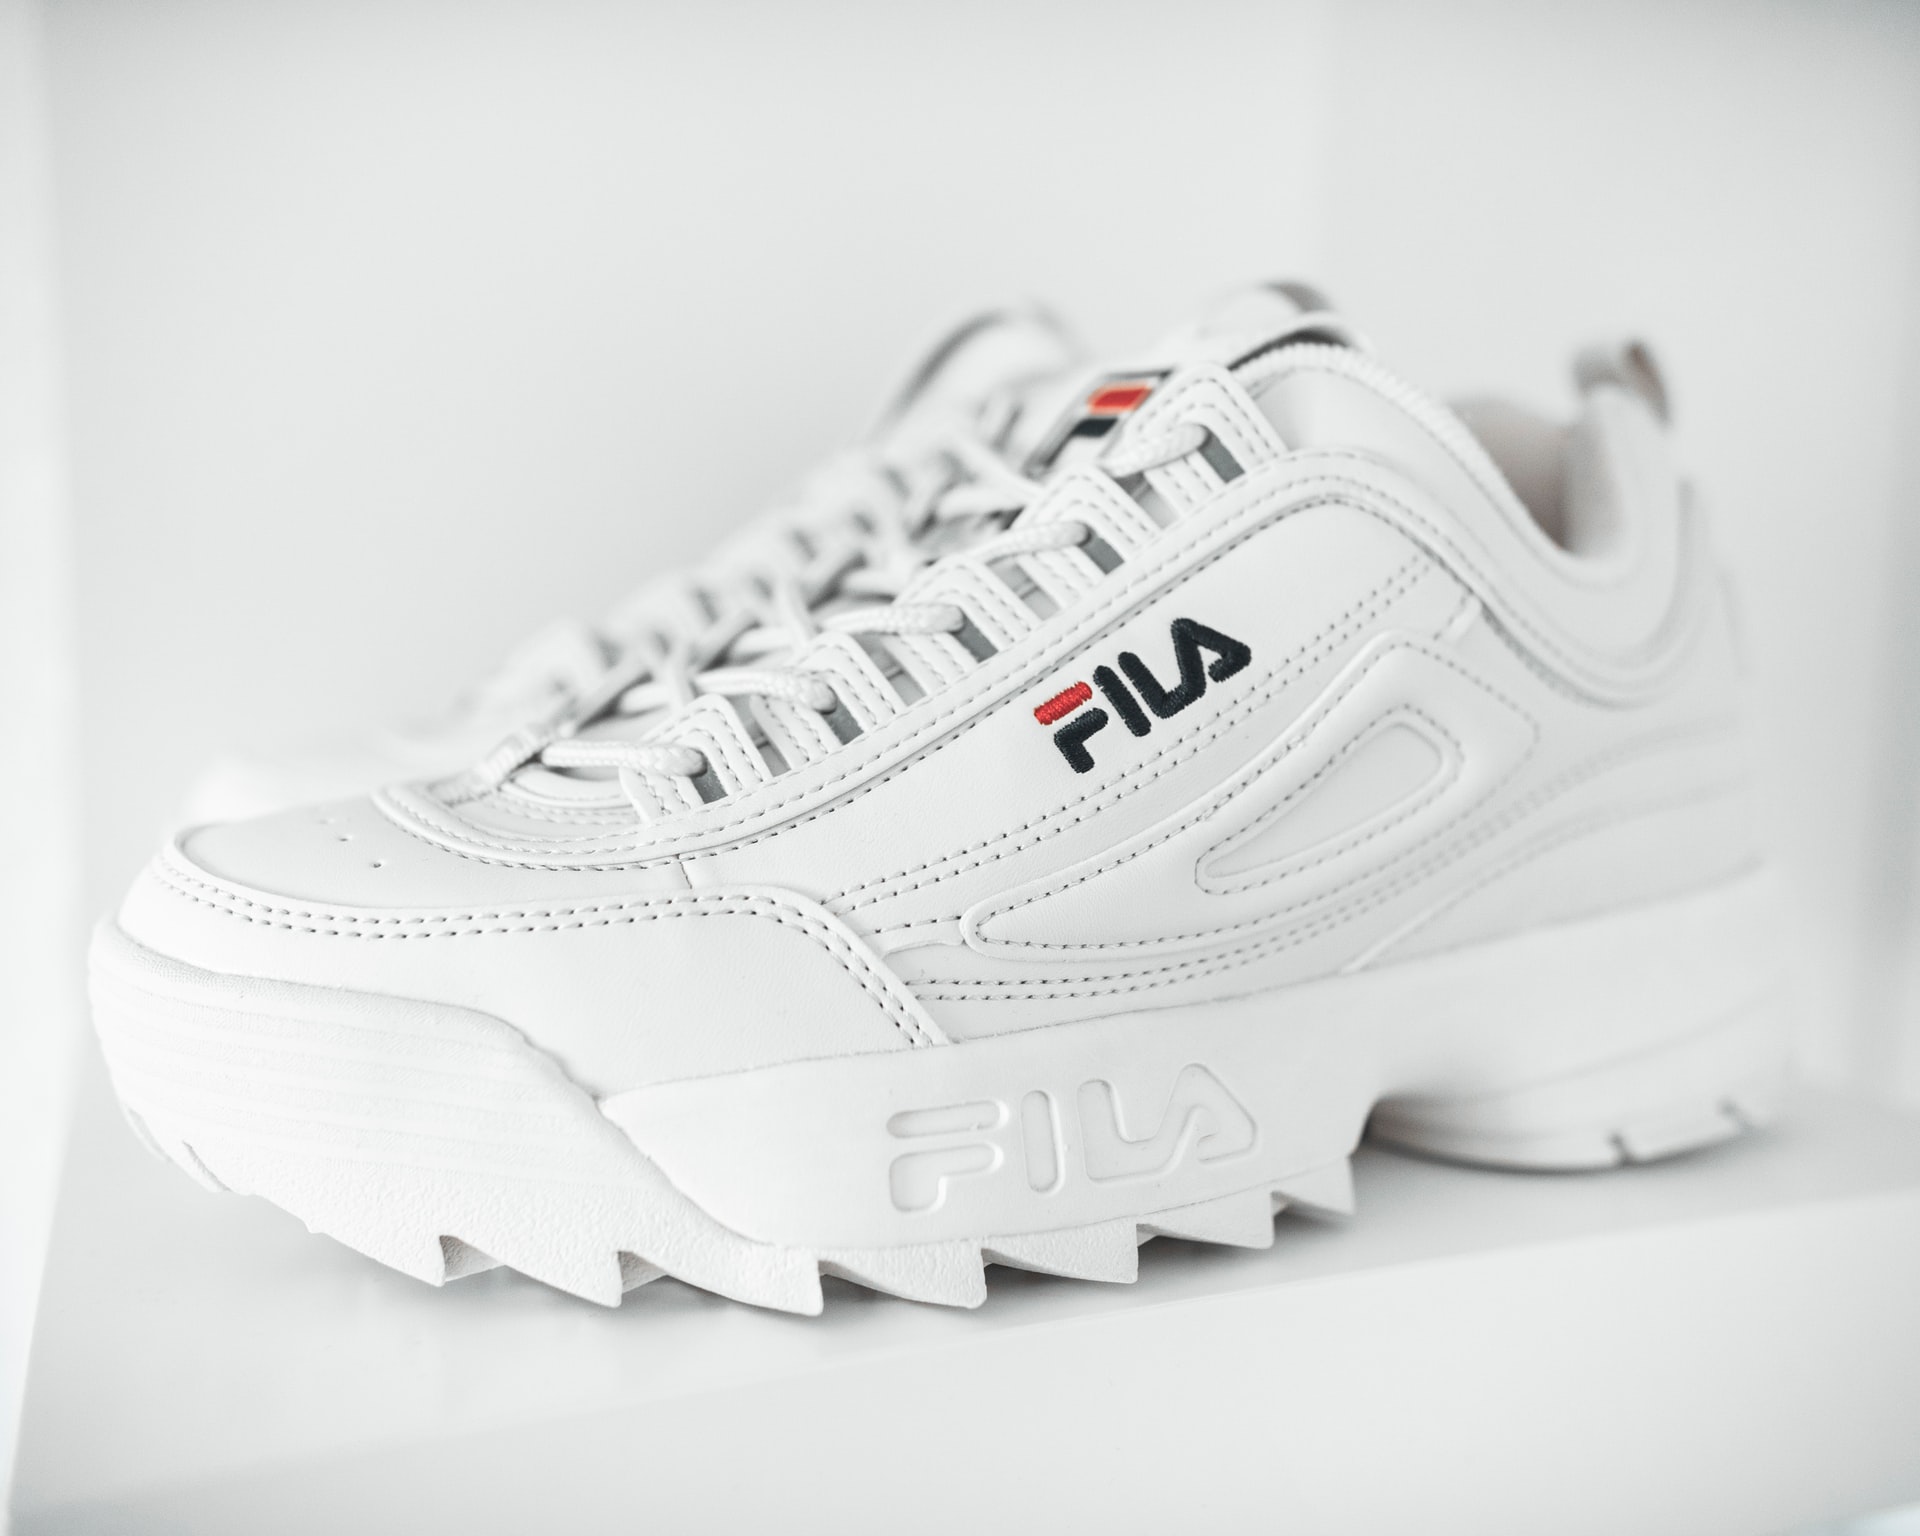 White color FILA shoe